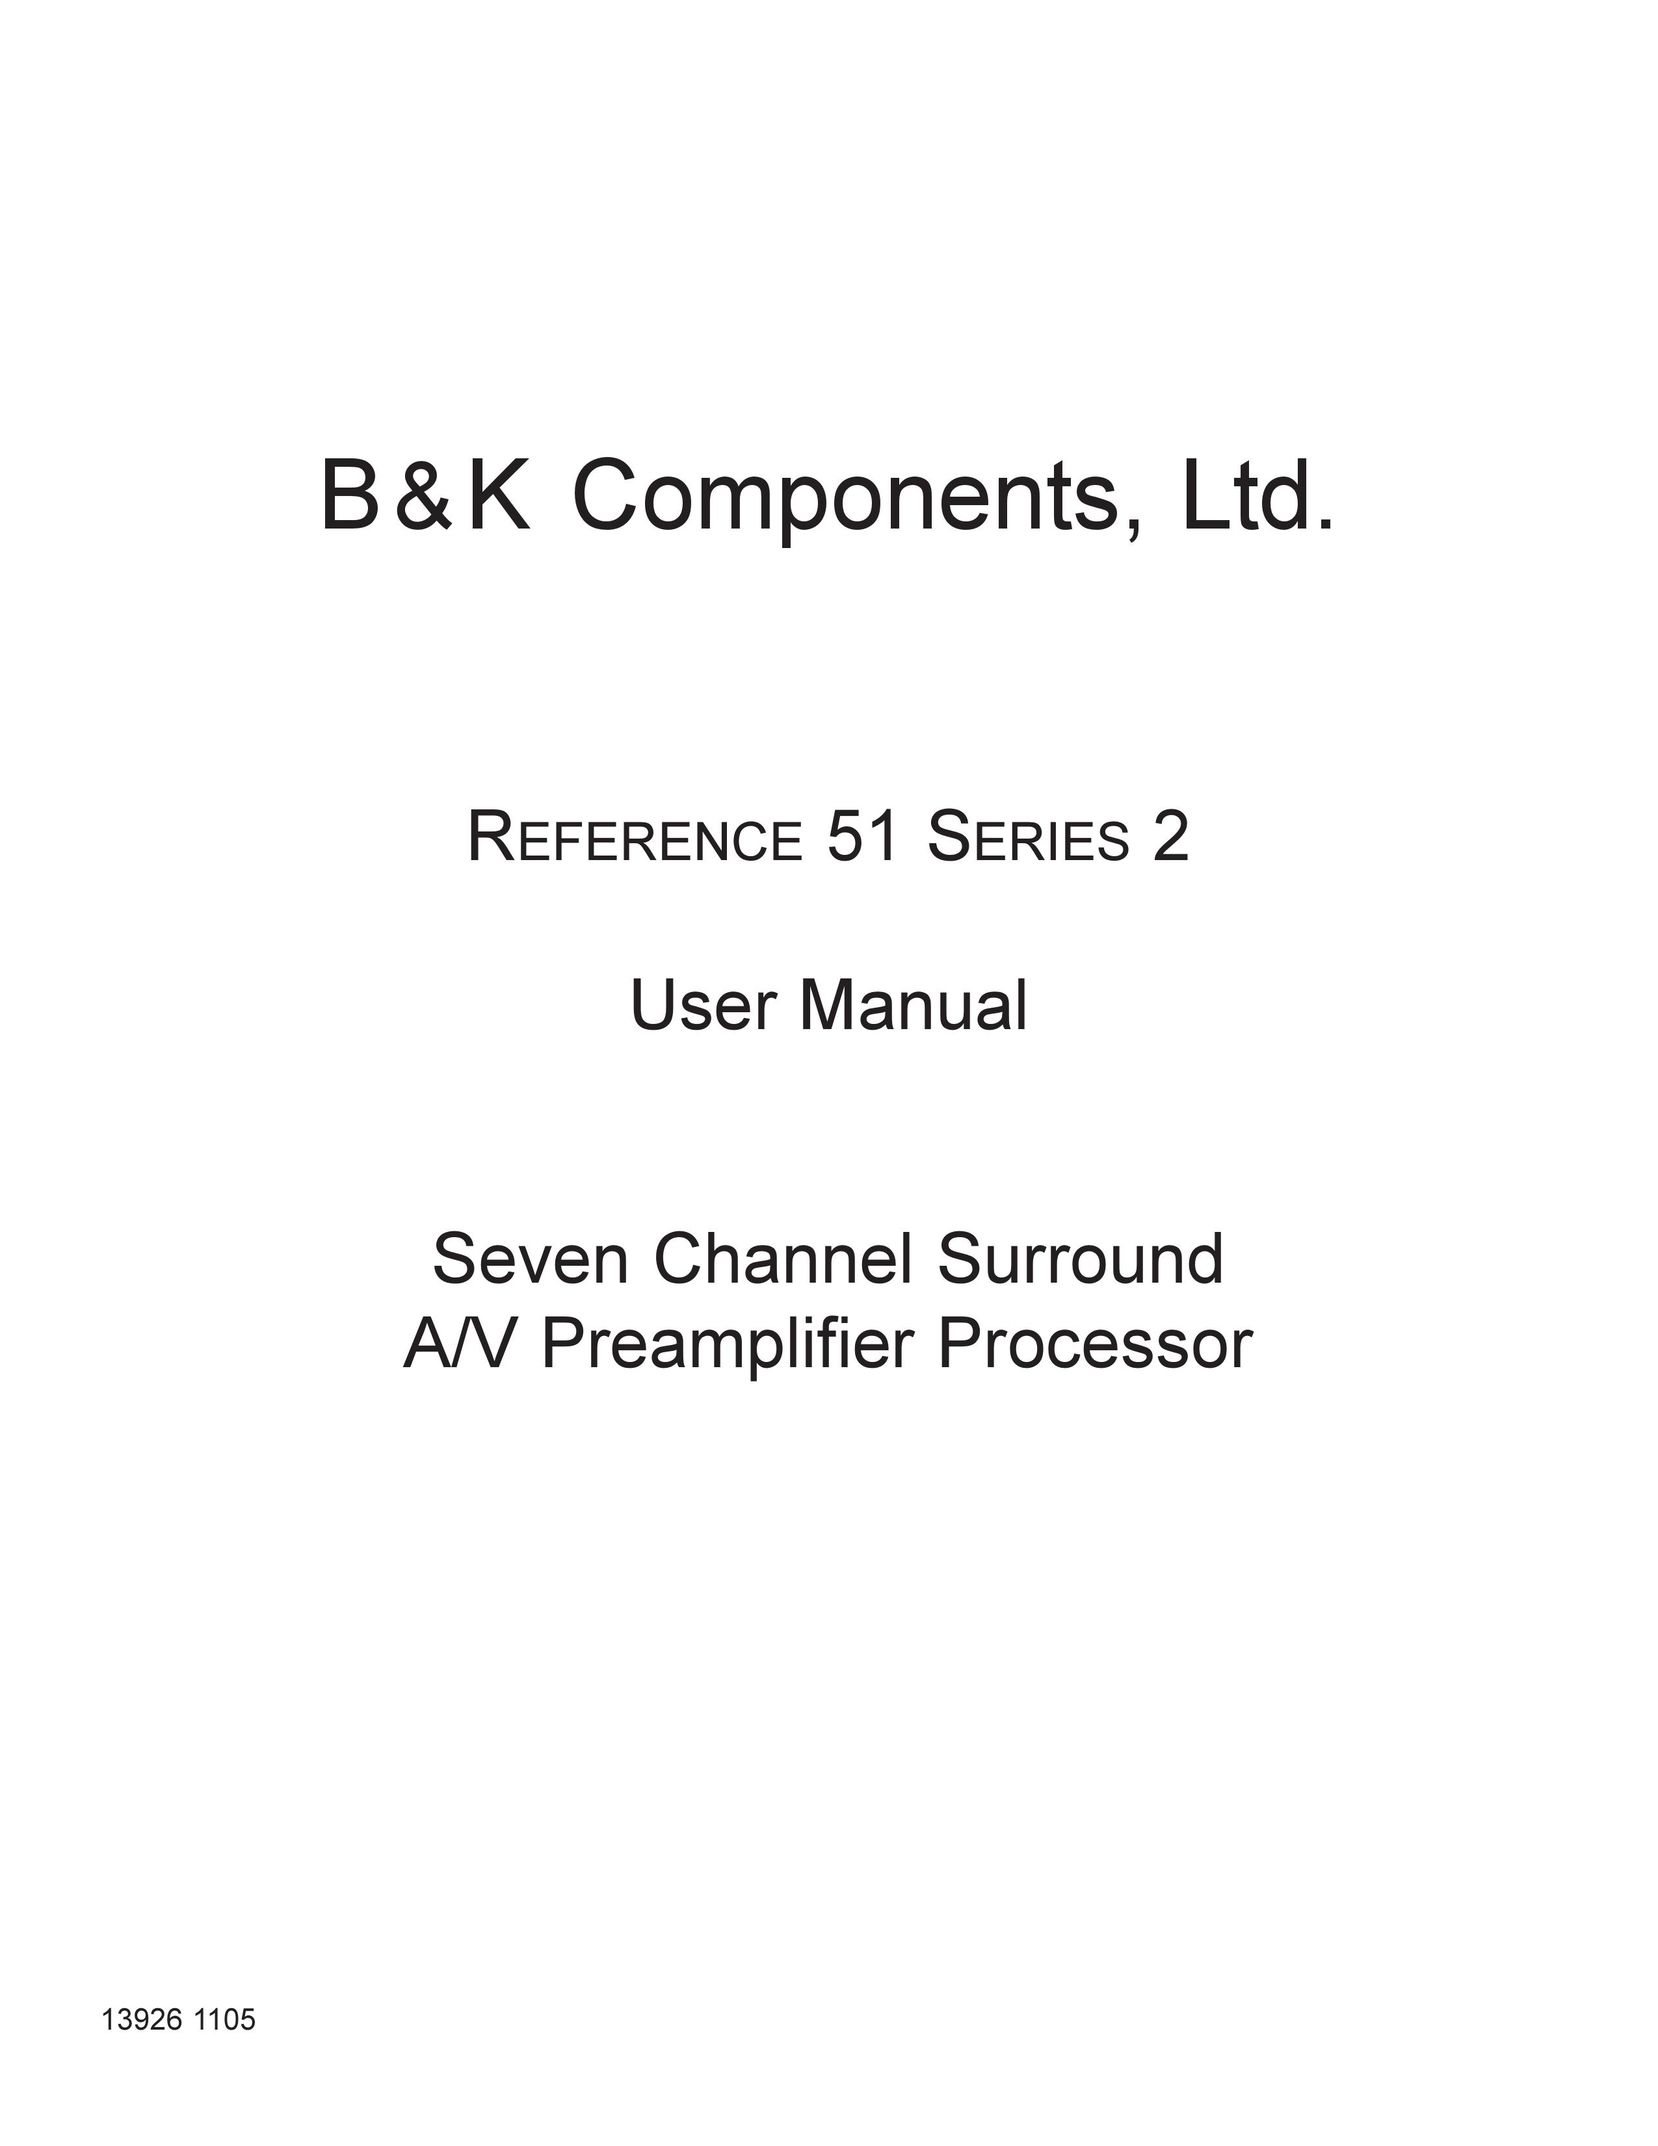 B&K Series 2 Car Amplifier User Manual